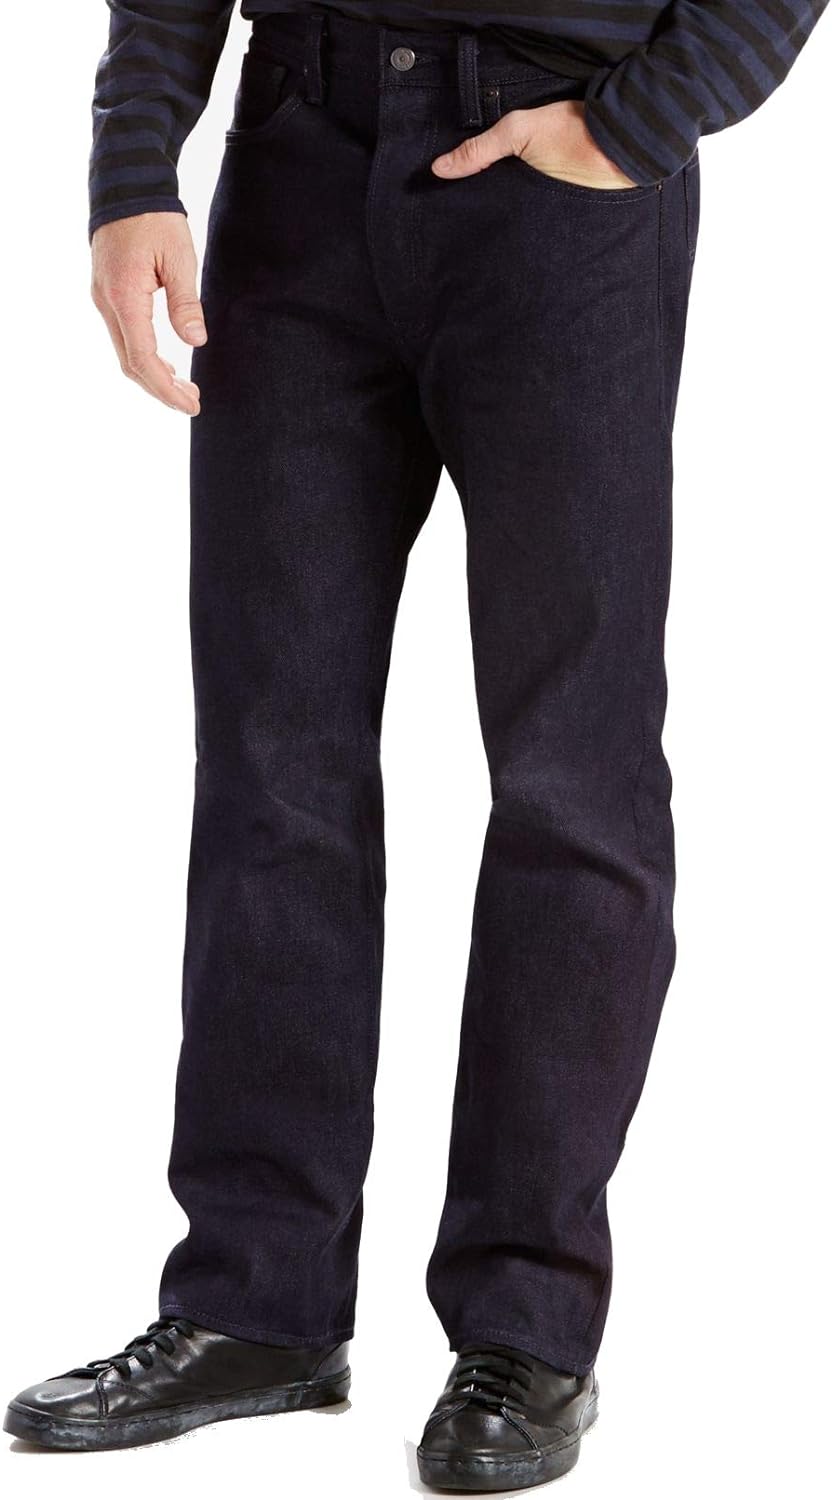 ليفايس بنطلون جينز اصلي 501 للرجال يتقلص حسب المقاس, أسود, قياس واحد